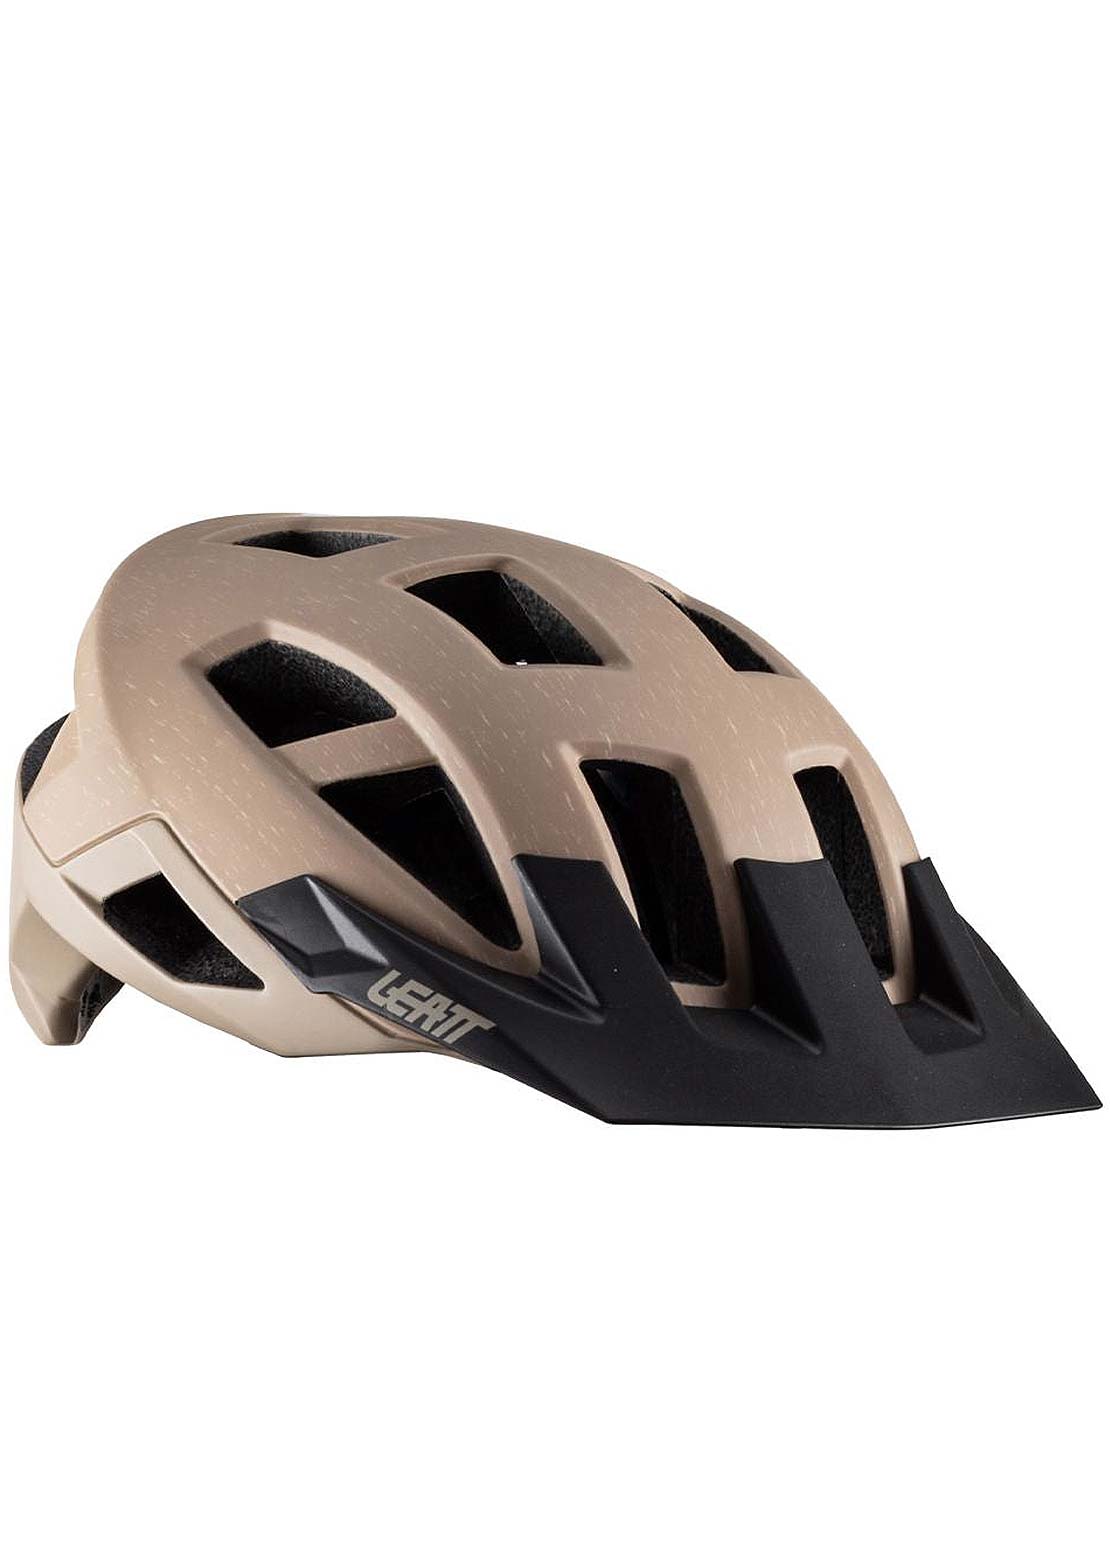 Leatt Trail 2.0 Mountain Bike Helmet - PRFO Sports